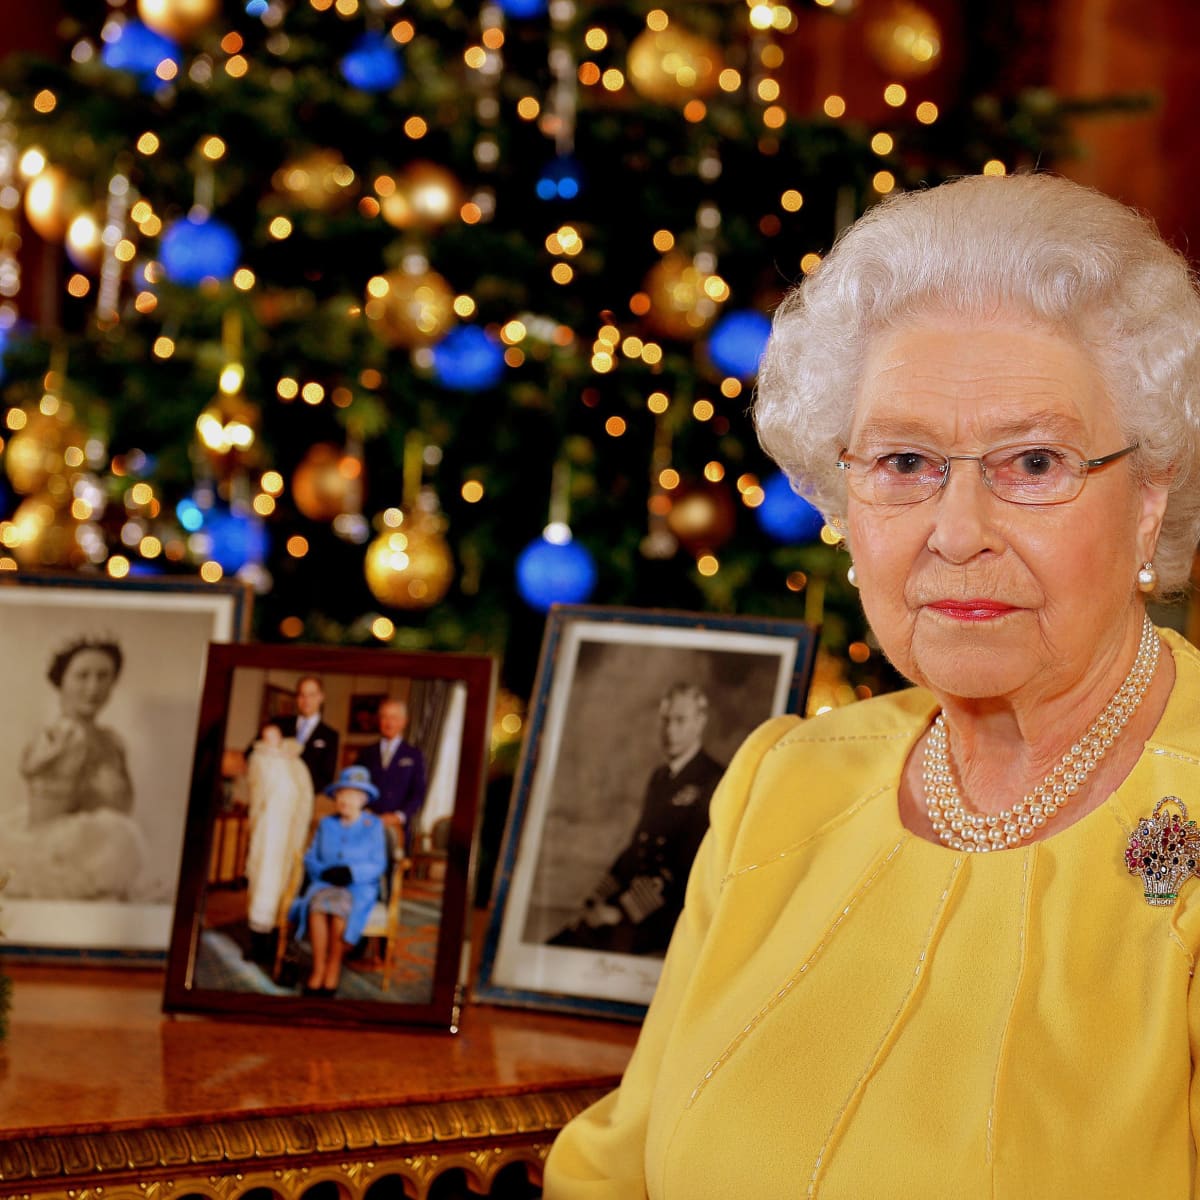 La reina Isabel Mascarilla corona aniversario de regalos de su cumpleaños navidad